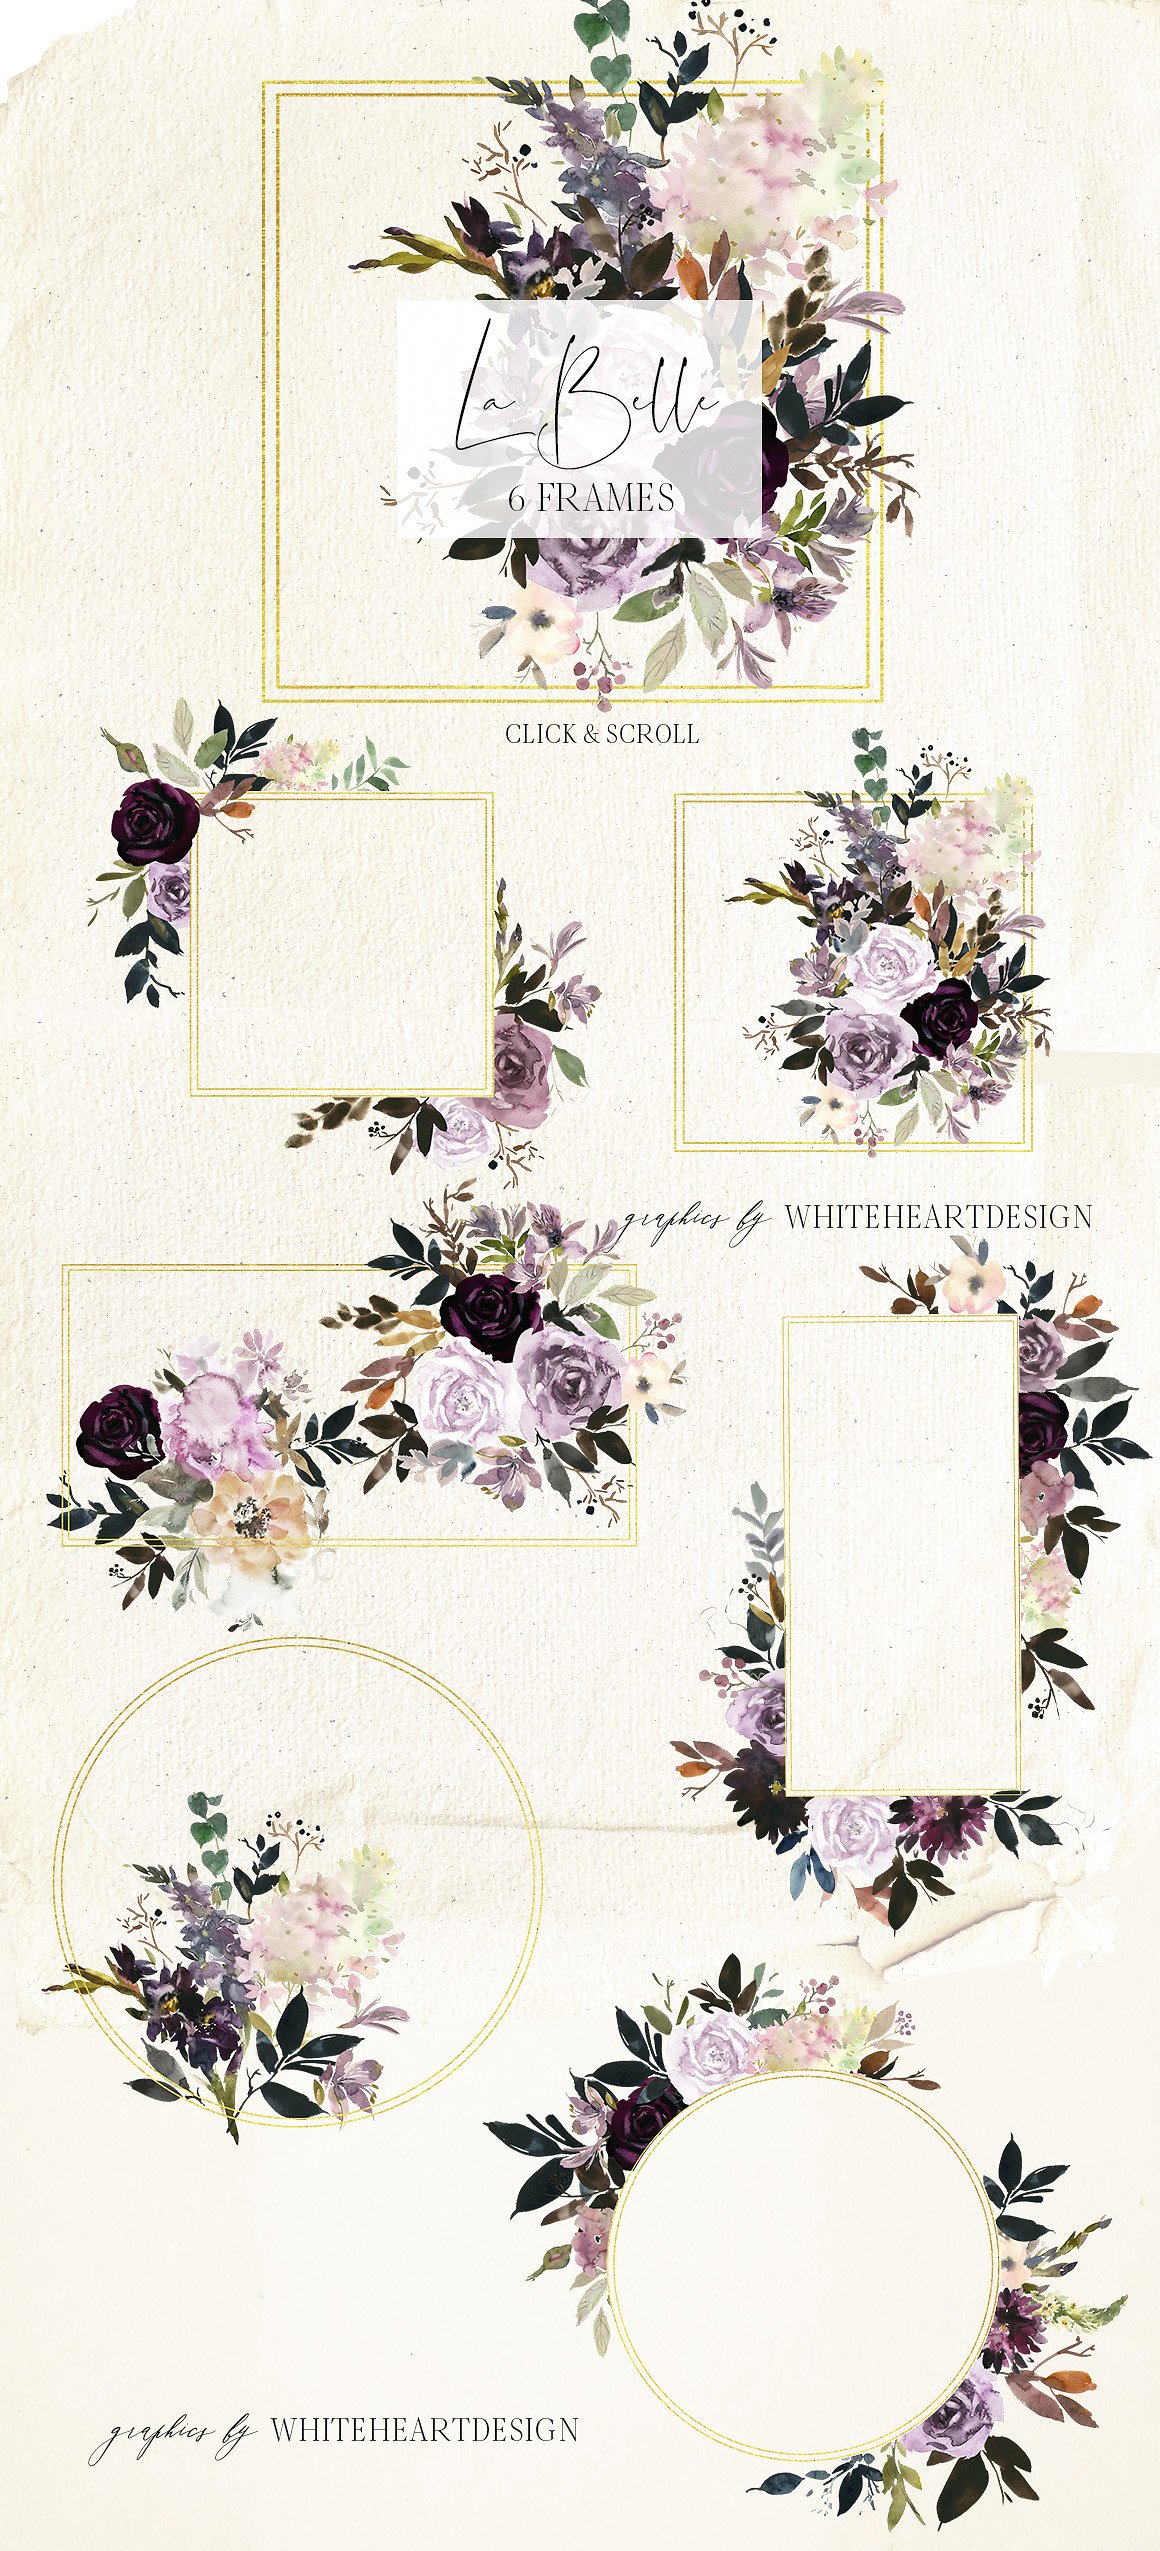 魅力水彩花卉剪贴画 La Belle Watercolor Floral Clipart插图